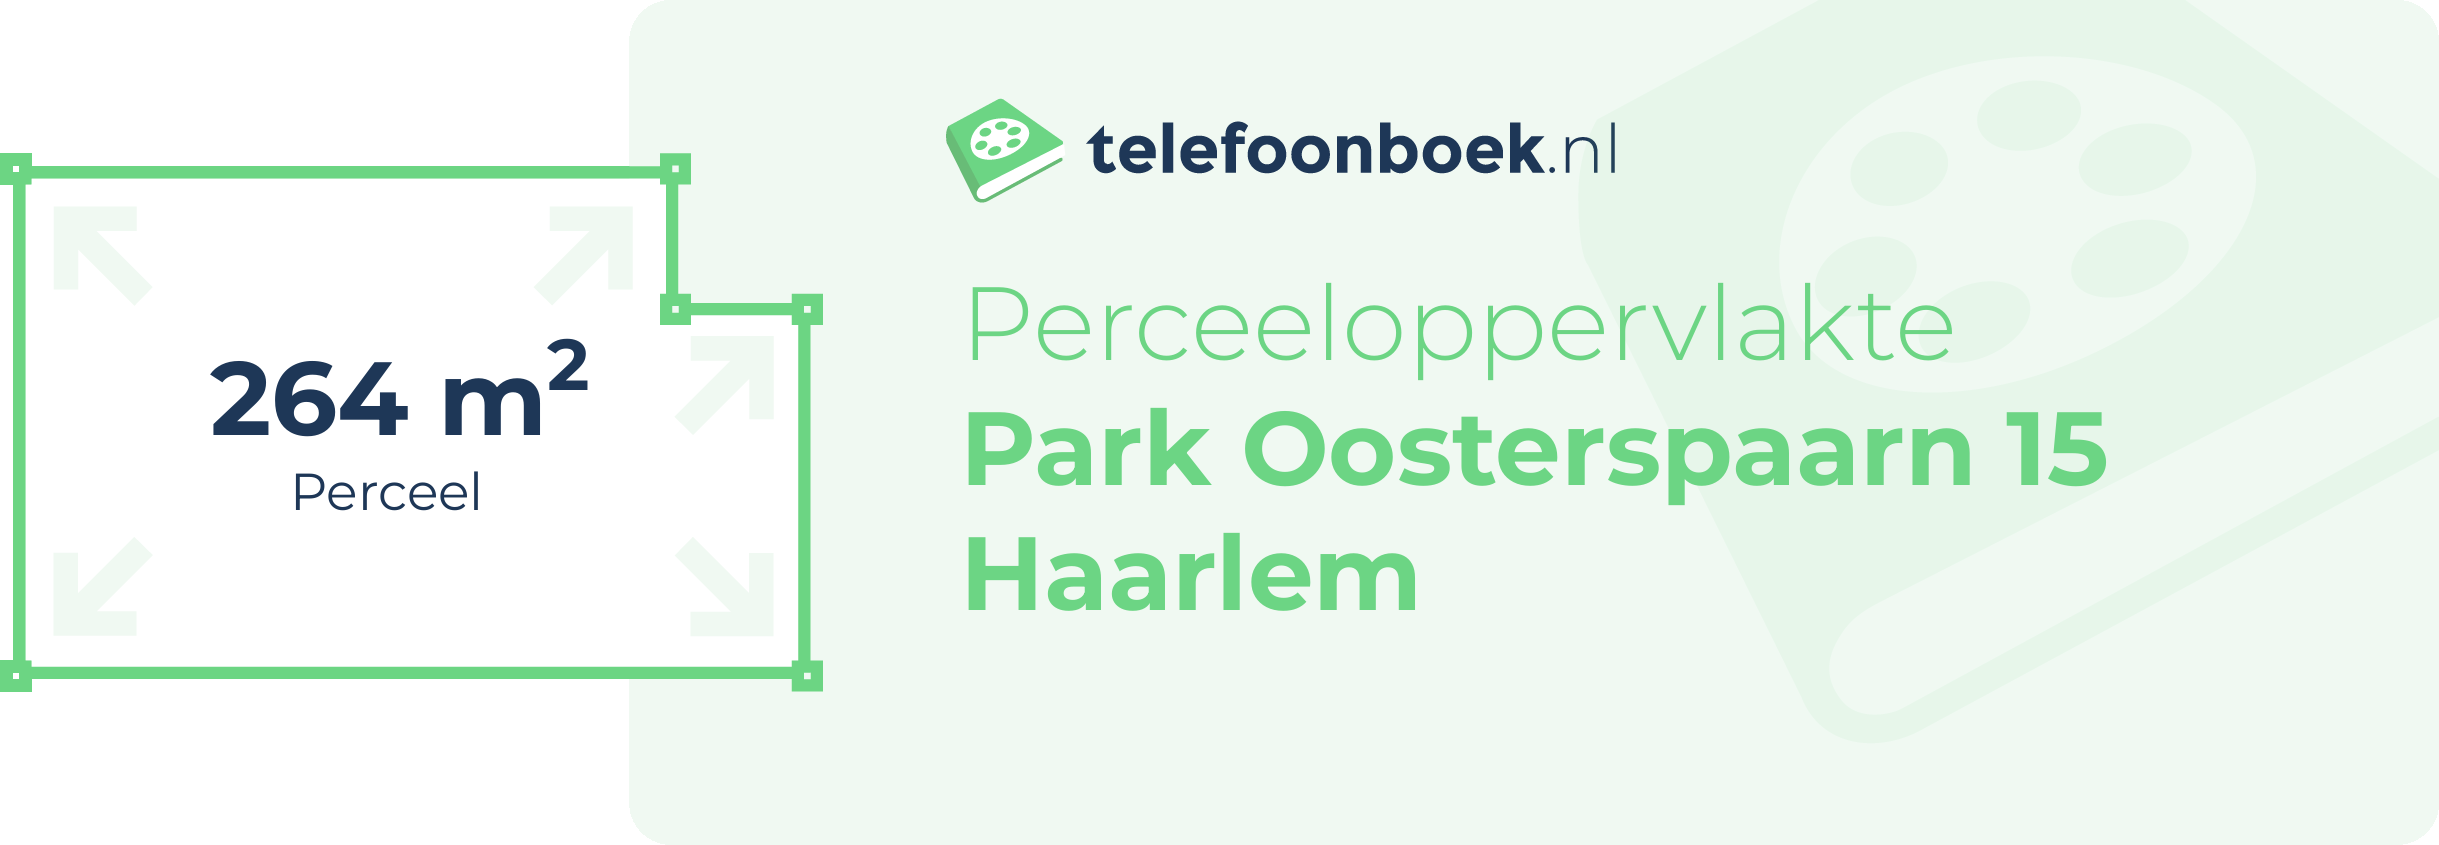 Perceeloppervlakte Park Oosterspaarn 15 Haarlem